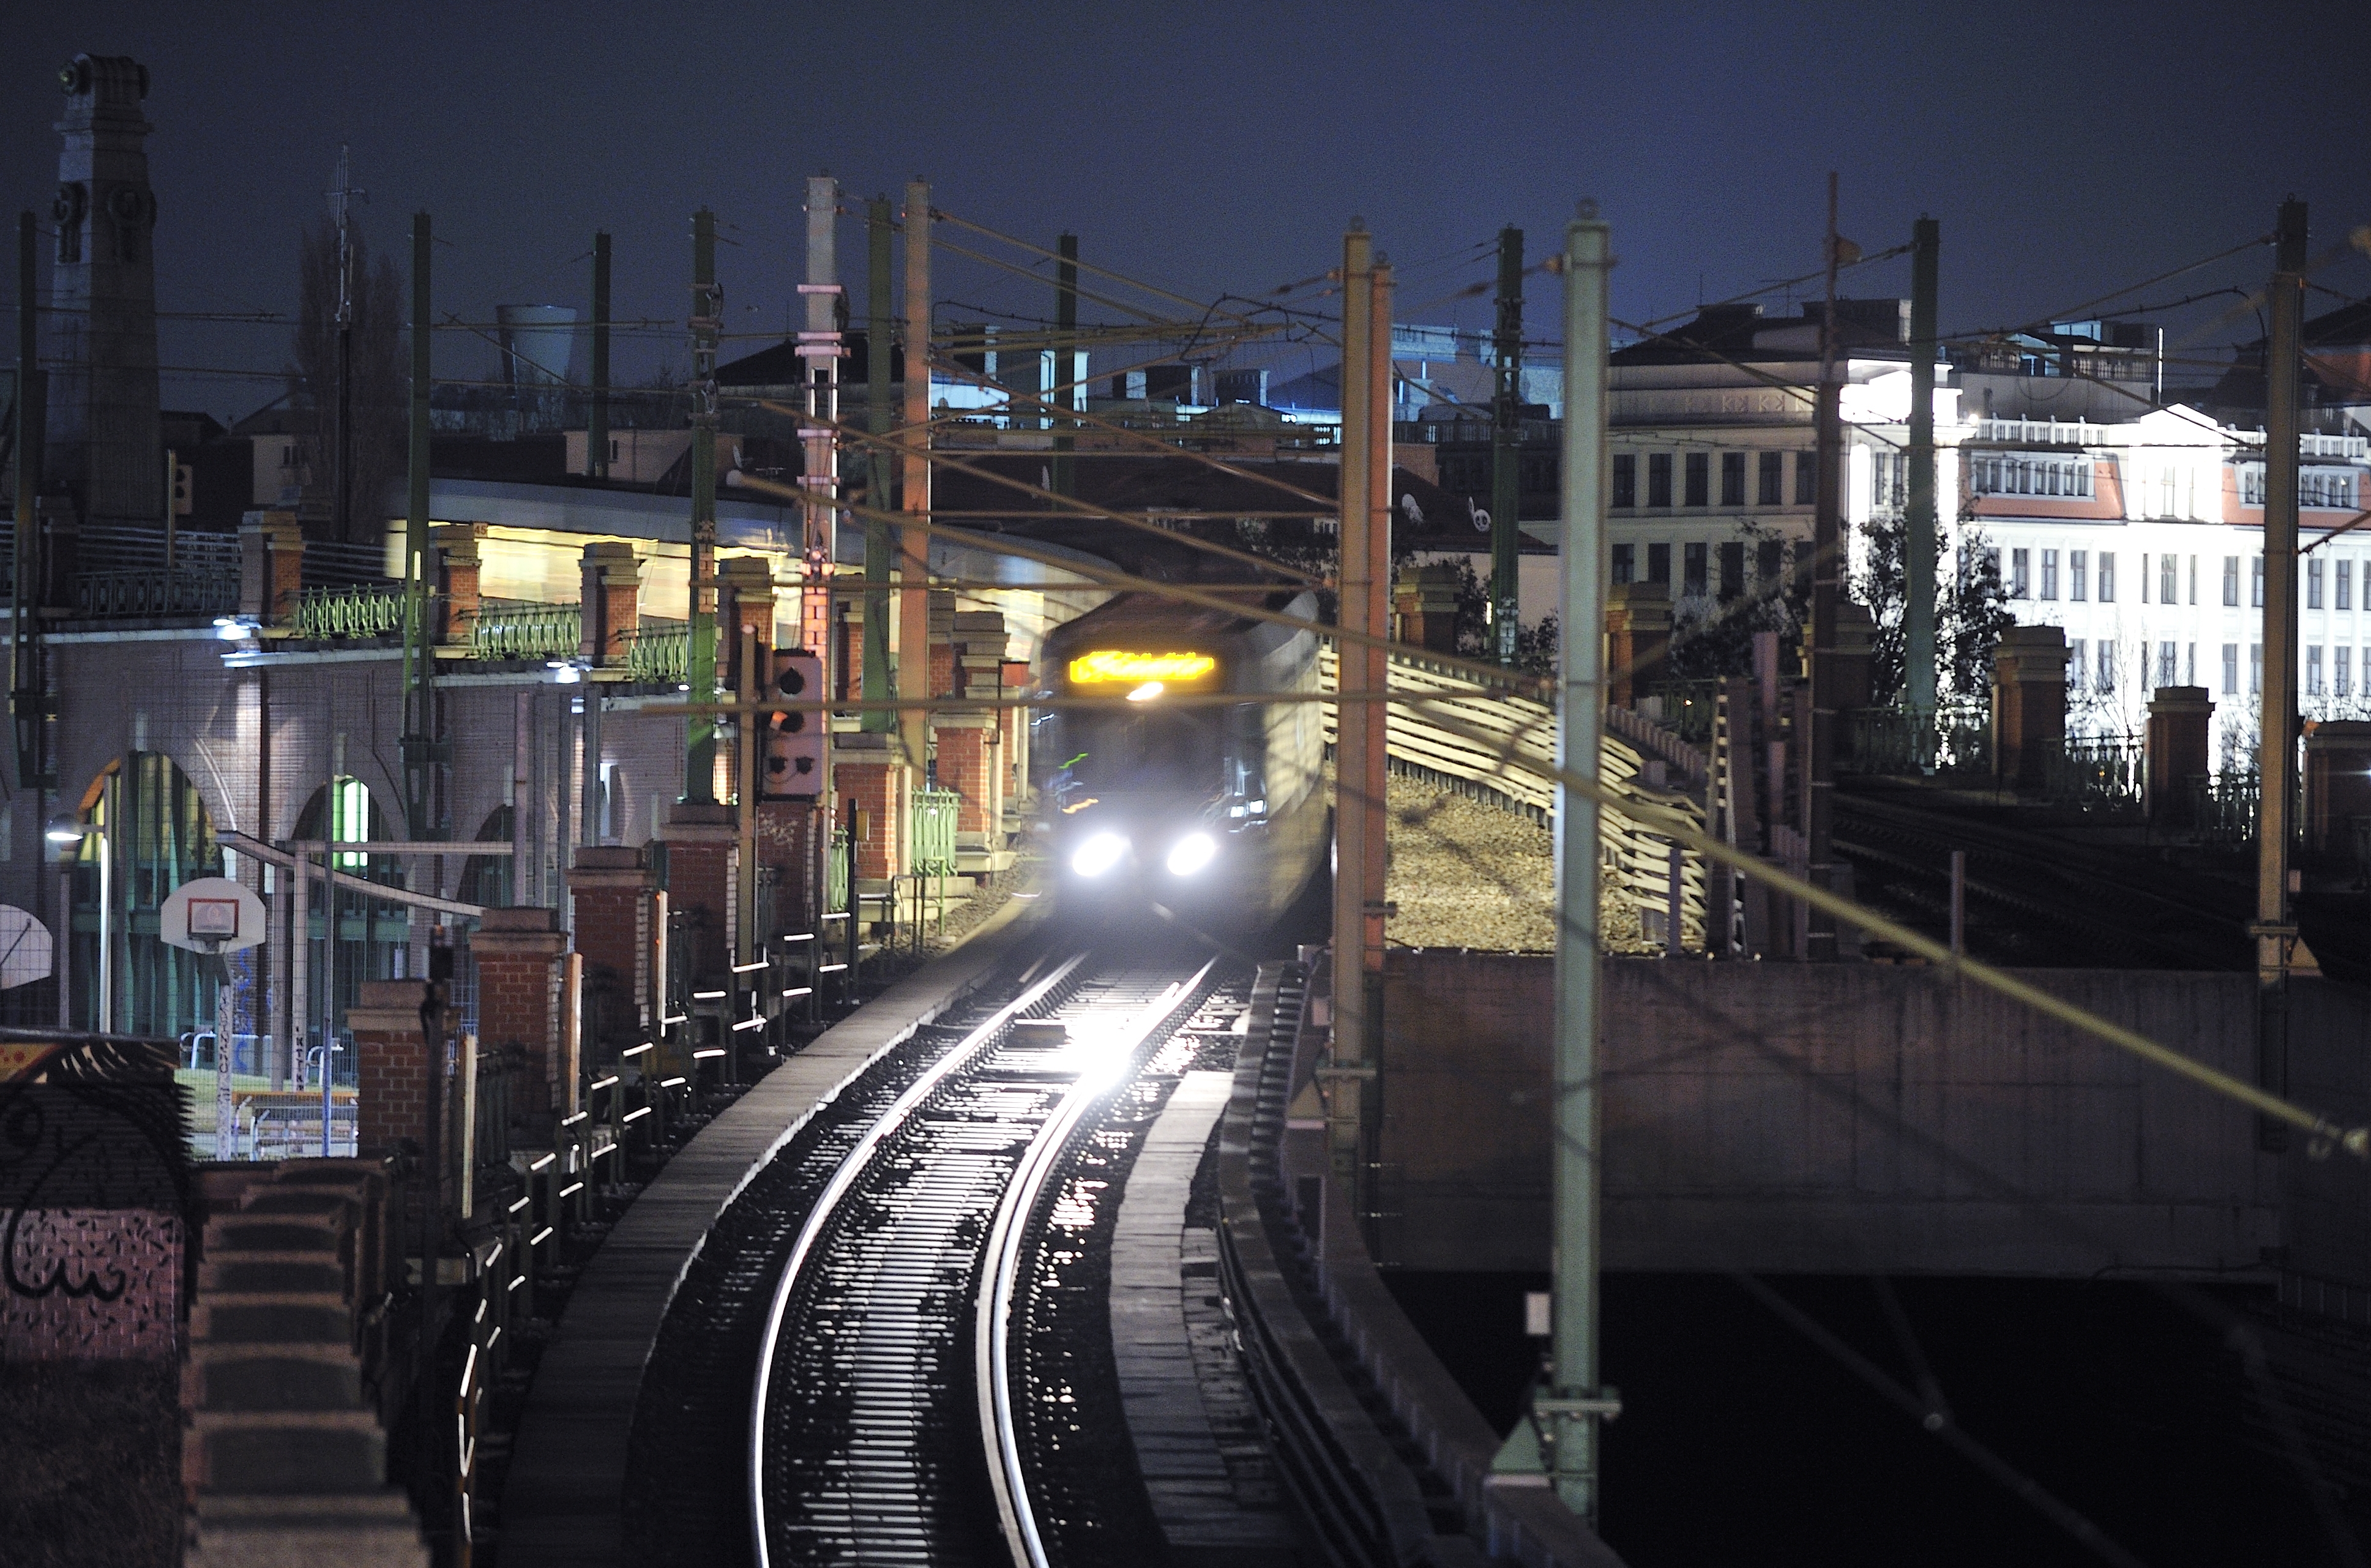 Bild der U-Bahn-Linie U6 bei Nachtbetrieb. Der Zug hat die Scheinwerfer an und ist in der Nähe der Station Längenfeldgasse unterwegs. Im Hintergrund befinden sich beleuchtete Häuser und die Gürtelbögen, sowie ein Basketballkorb und Graffitis.